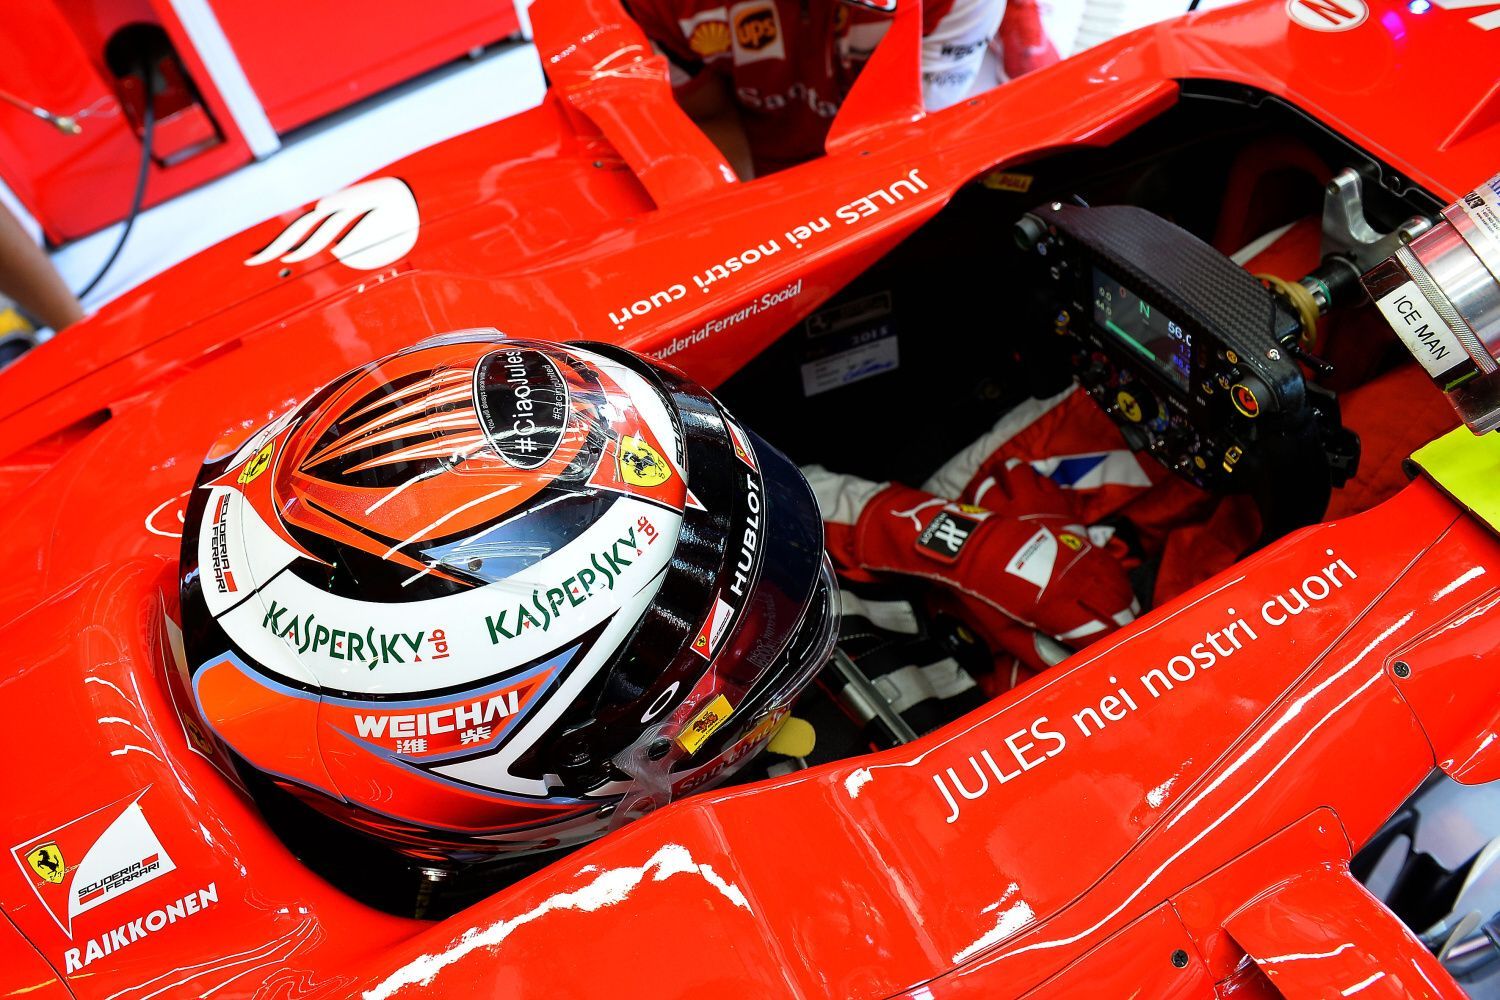 F1, VC Maďarska 2015: pocta Julesi Bianchimu - Sebastian Vettel, Ferrari "JULES v našich srdcích"